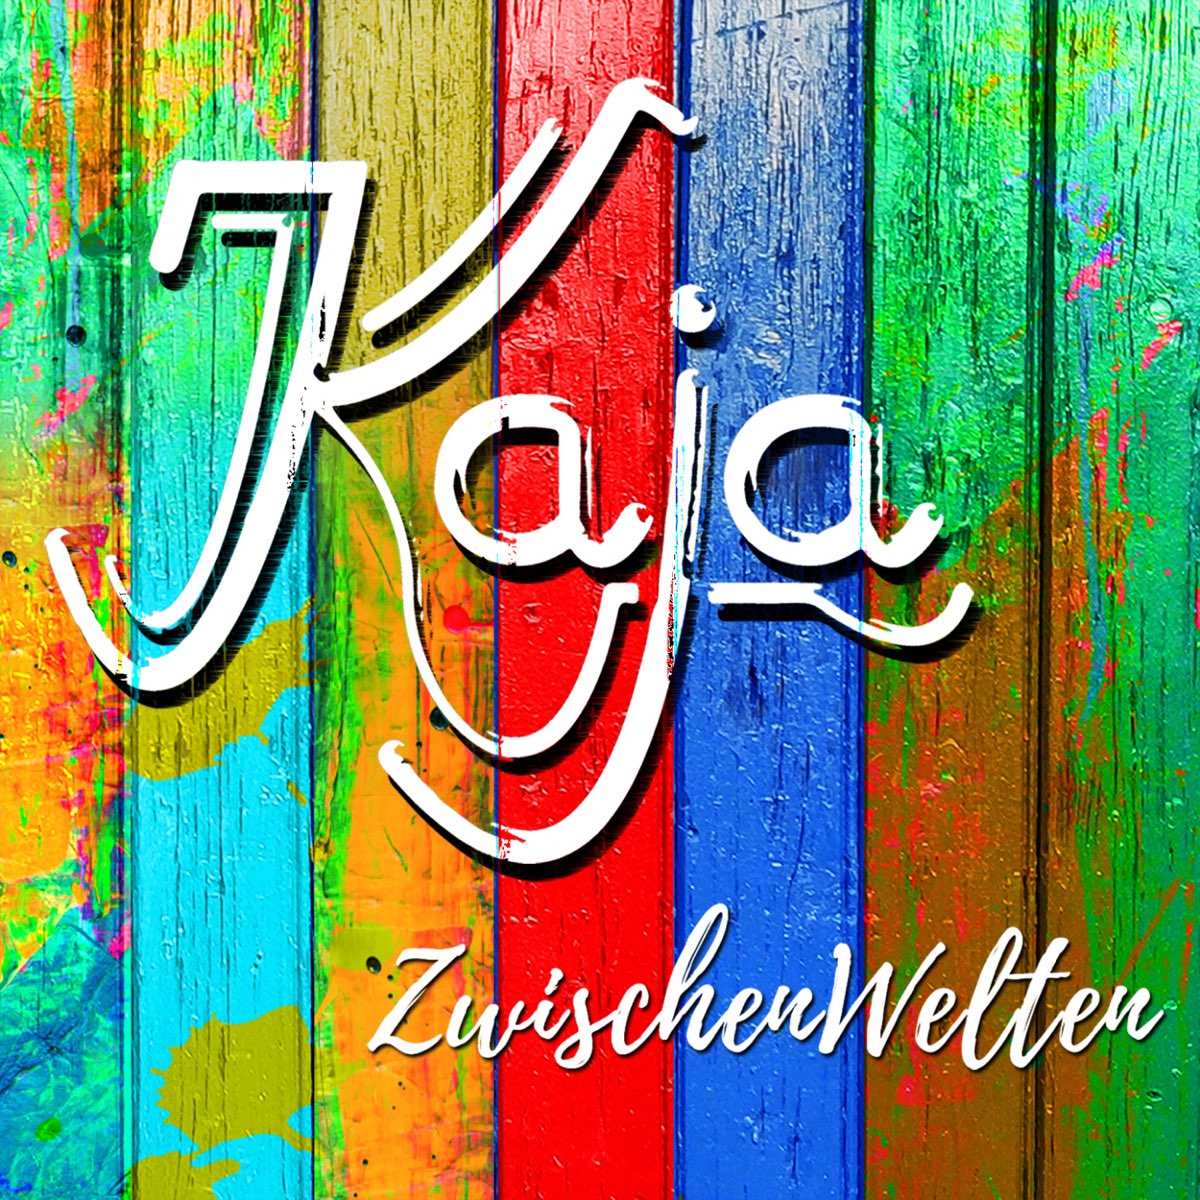 Zwischenwelten - EP by Kaja on Apple Music